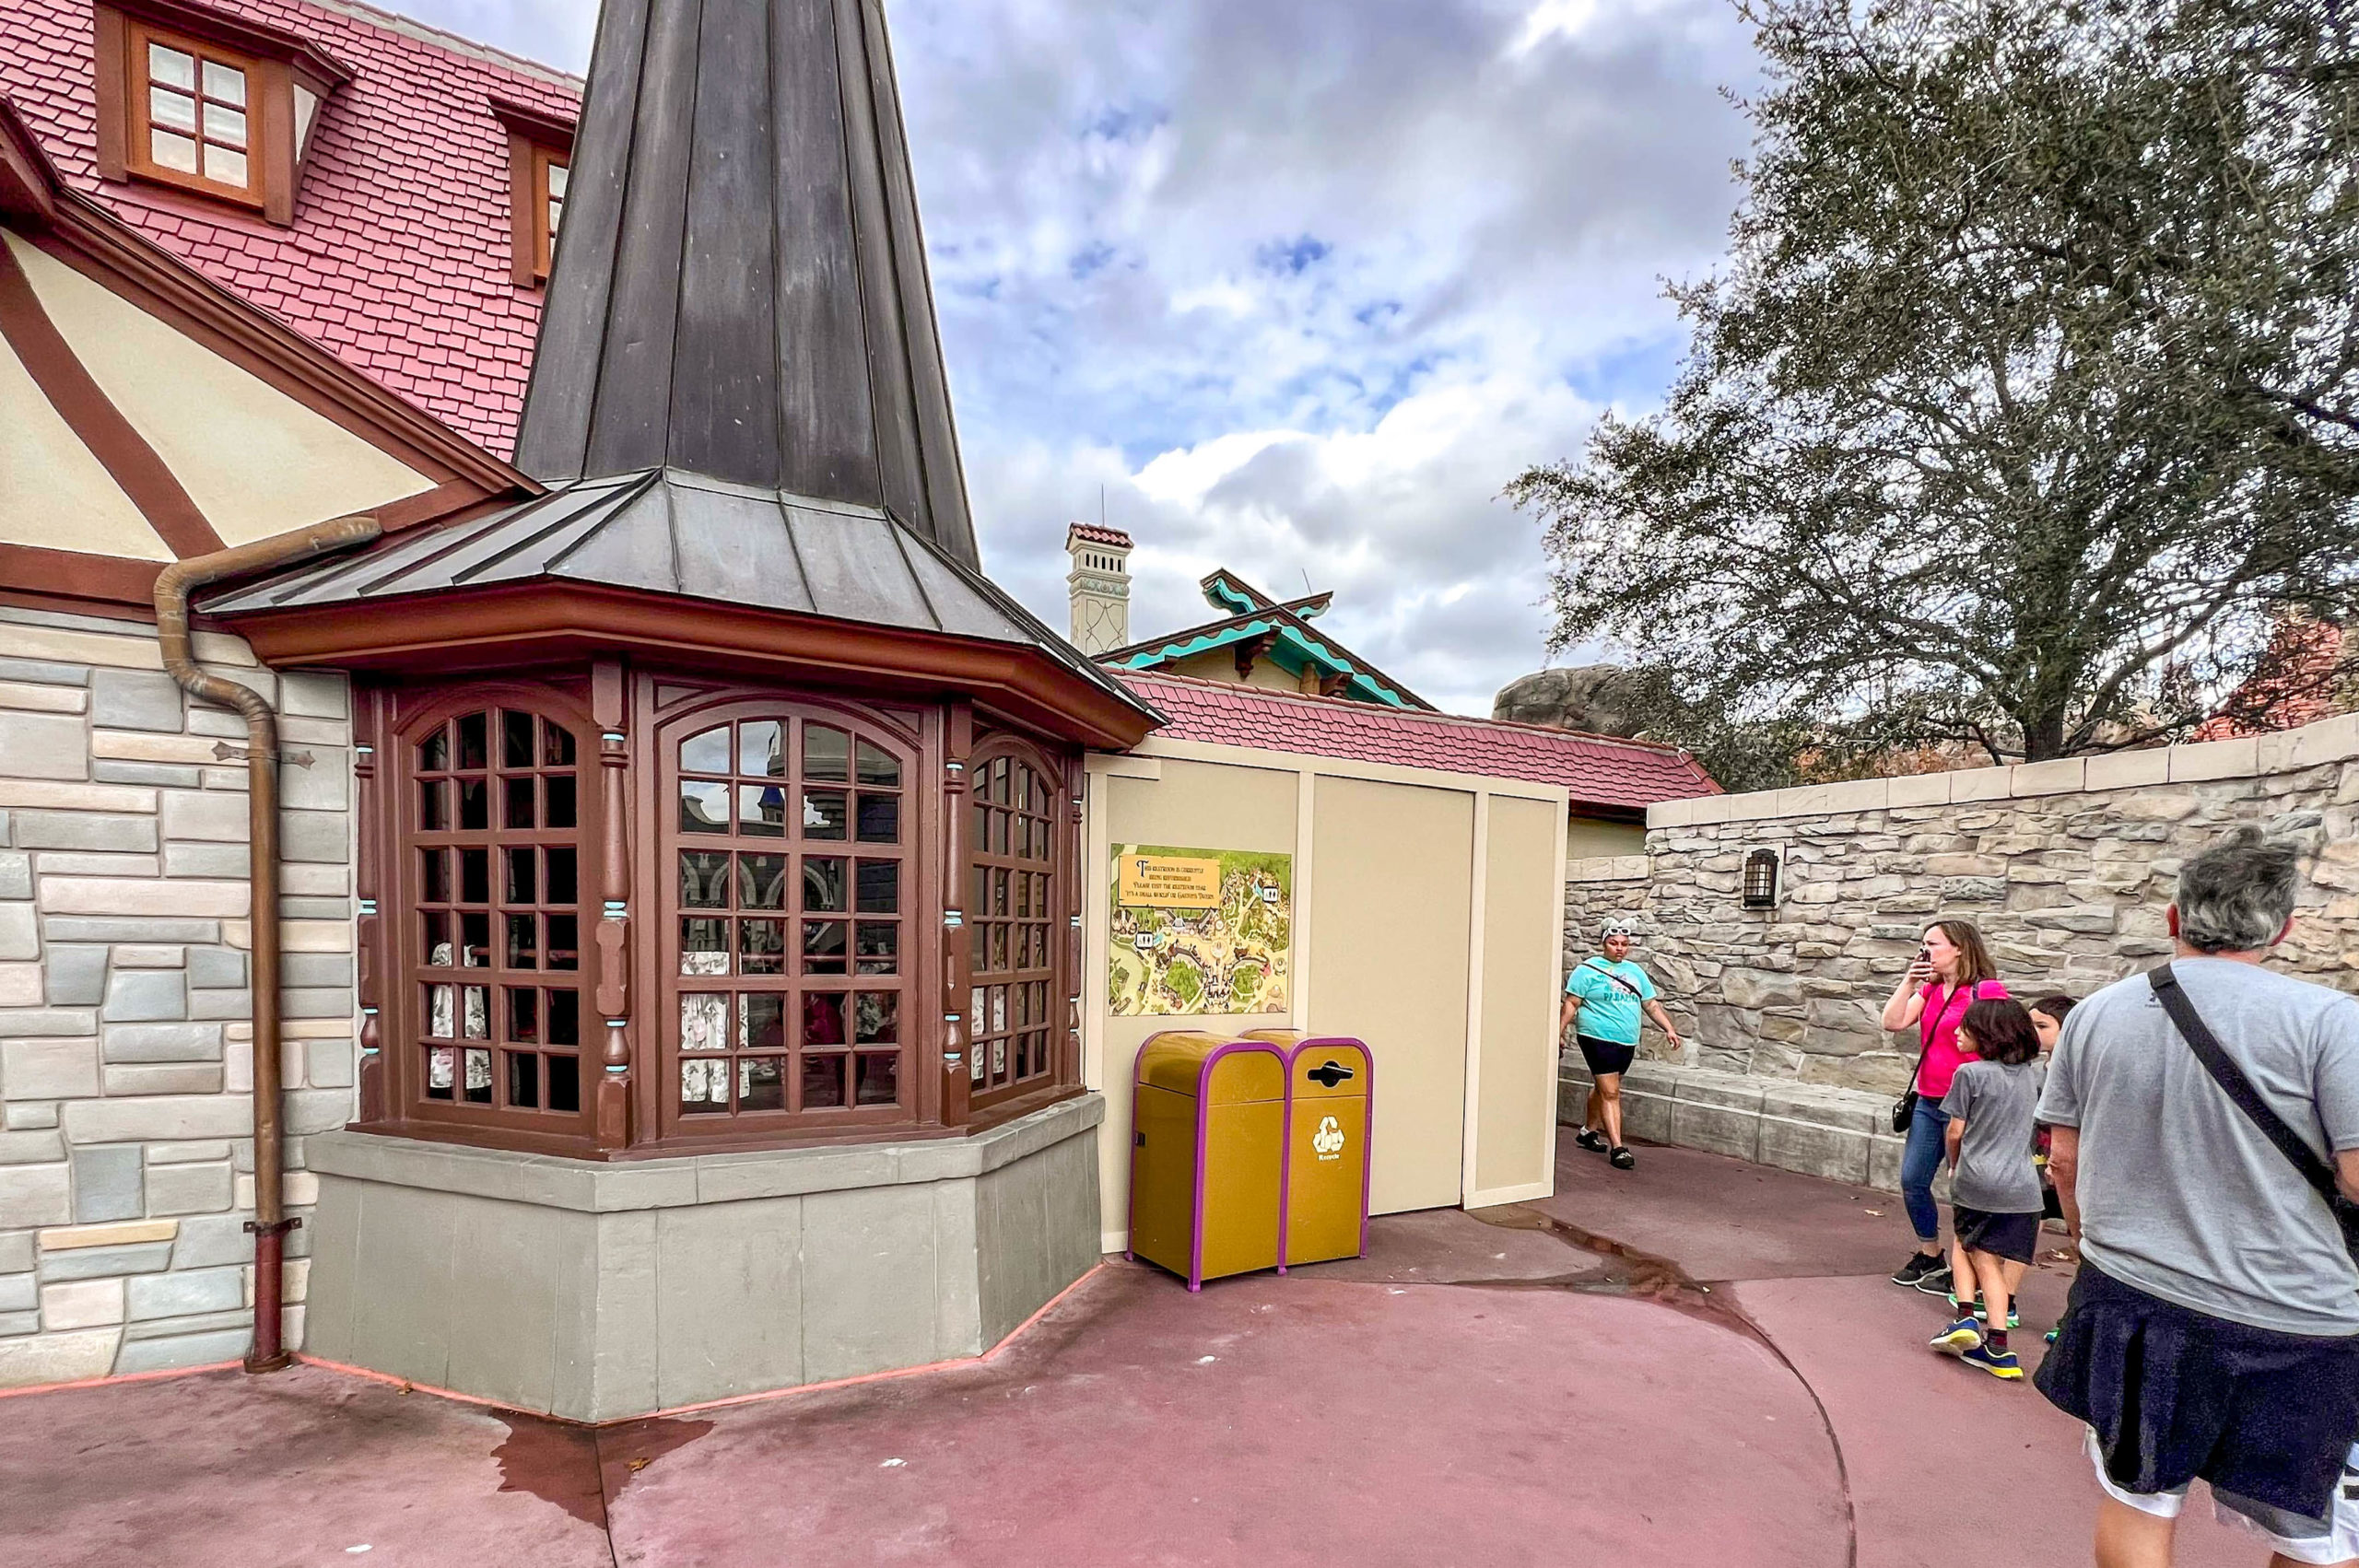 Pinocchio Village Haus bathrooms closed